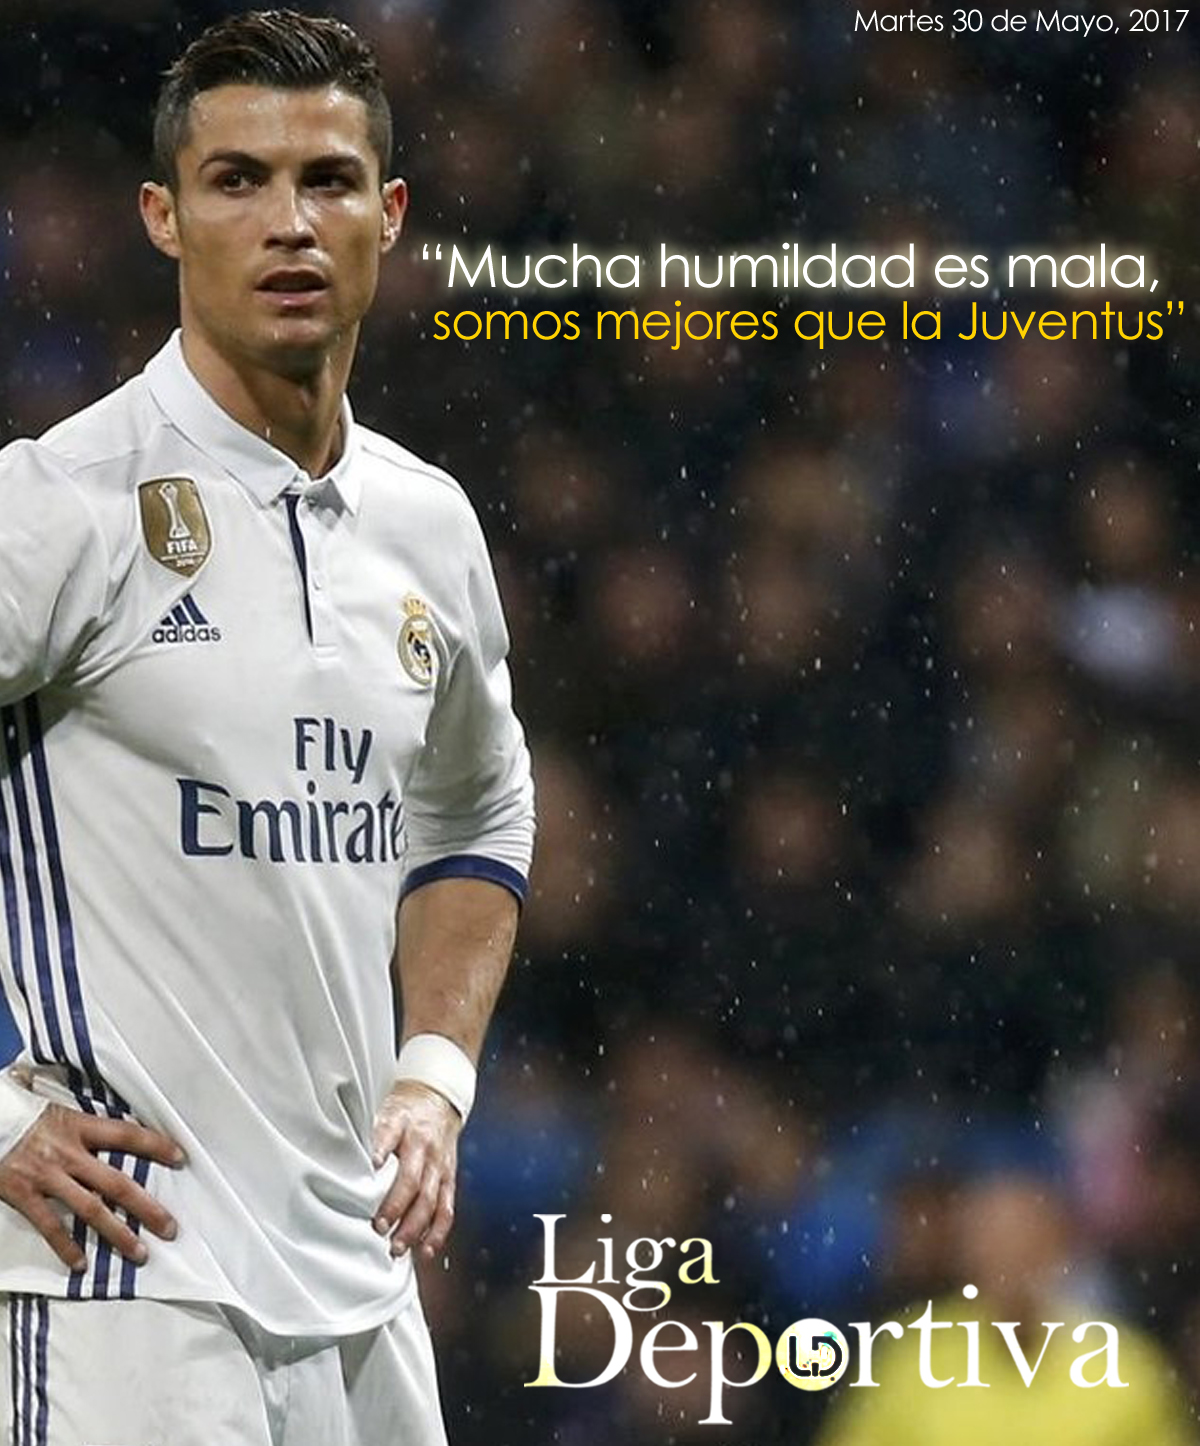 Cristiano Ronaldo: "Mucha humildad no es buena, somos mejores que la Juventus"